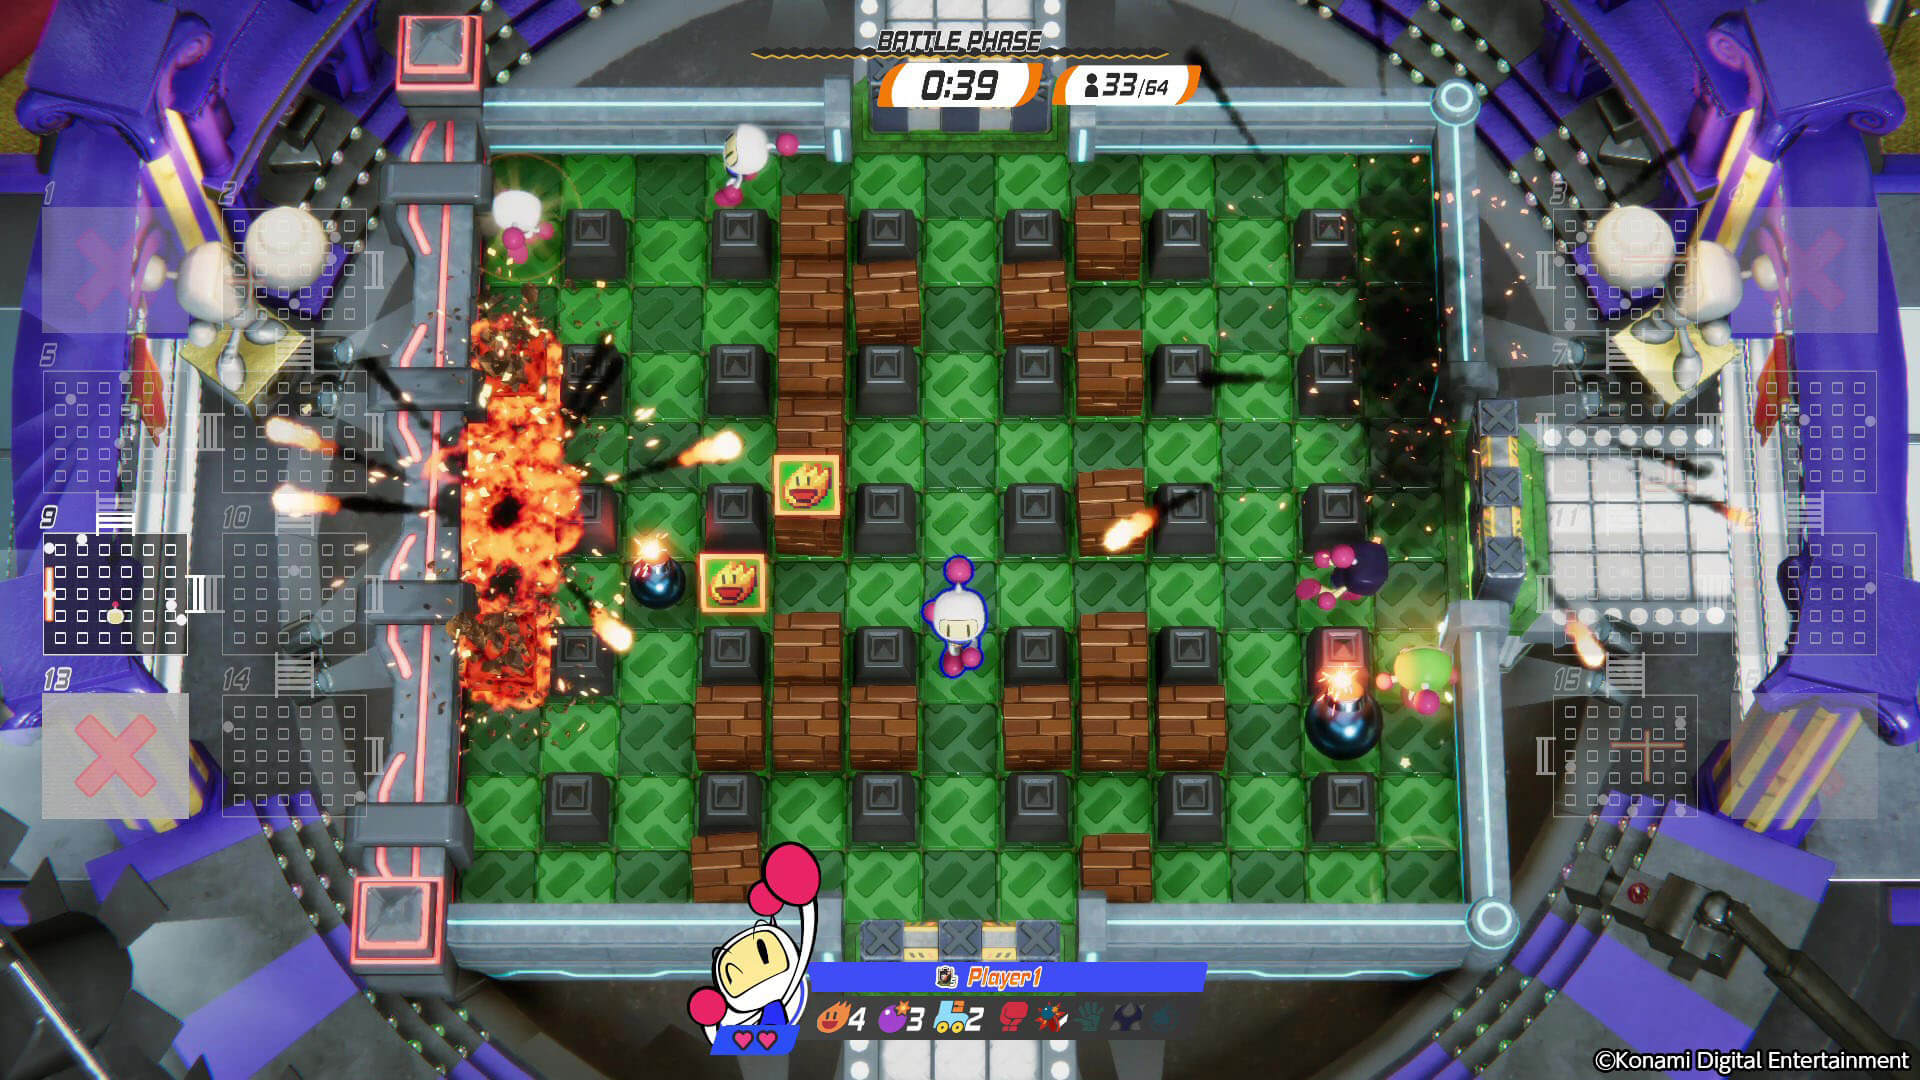 Super Bomberman R2 - PS4 Games